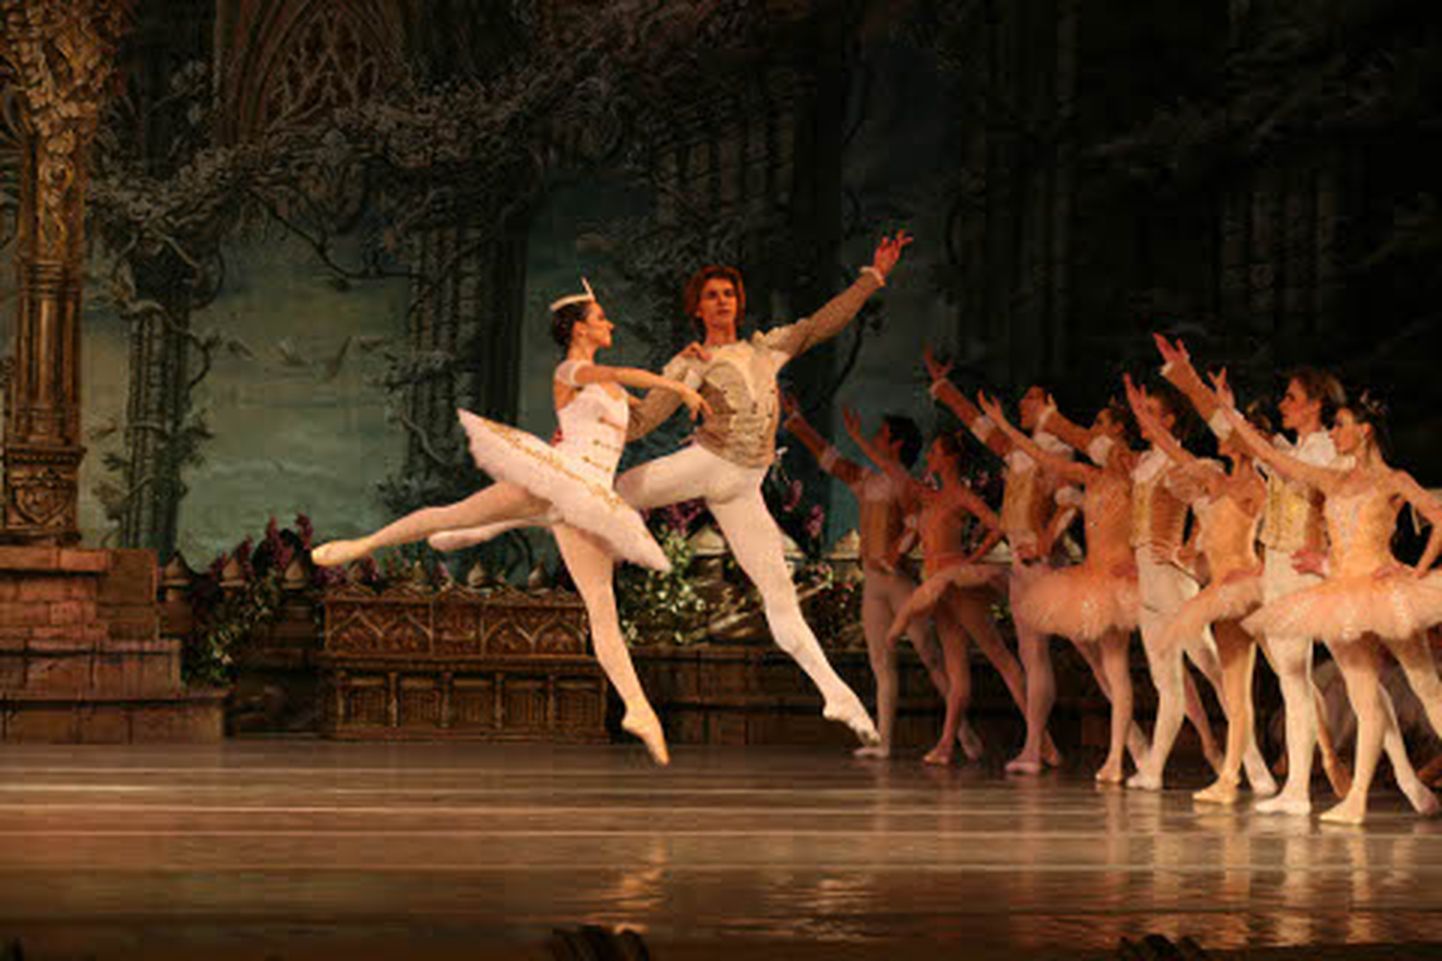 Stseen balletist "Raimonda".